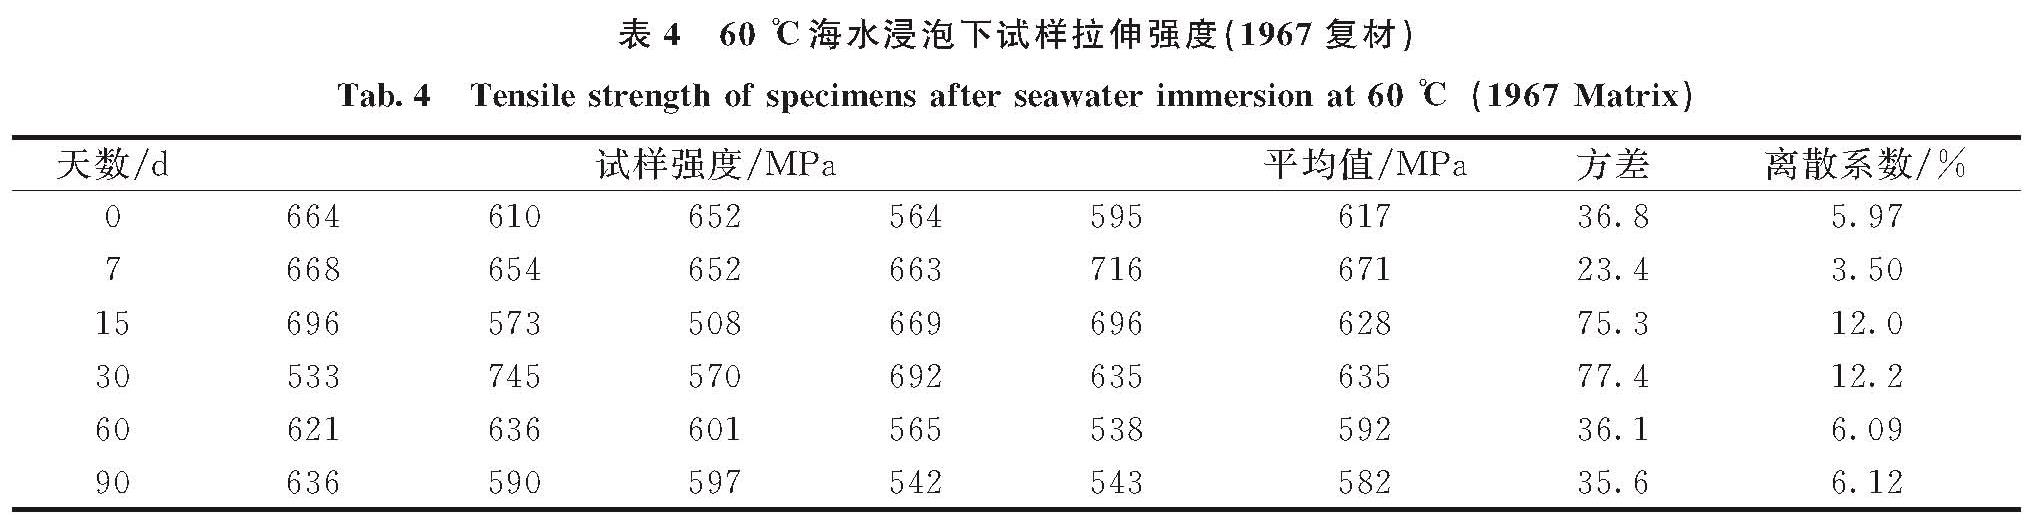 表4 60 ℃海水浸泡下试样拉伸强度(1967复材)<br/>Tab.4 Tensile strength of specimens after seawater immersion at 60 ℃(1967 Matrix)